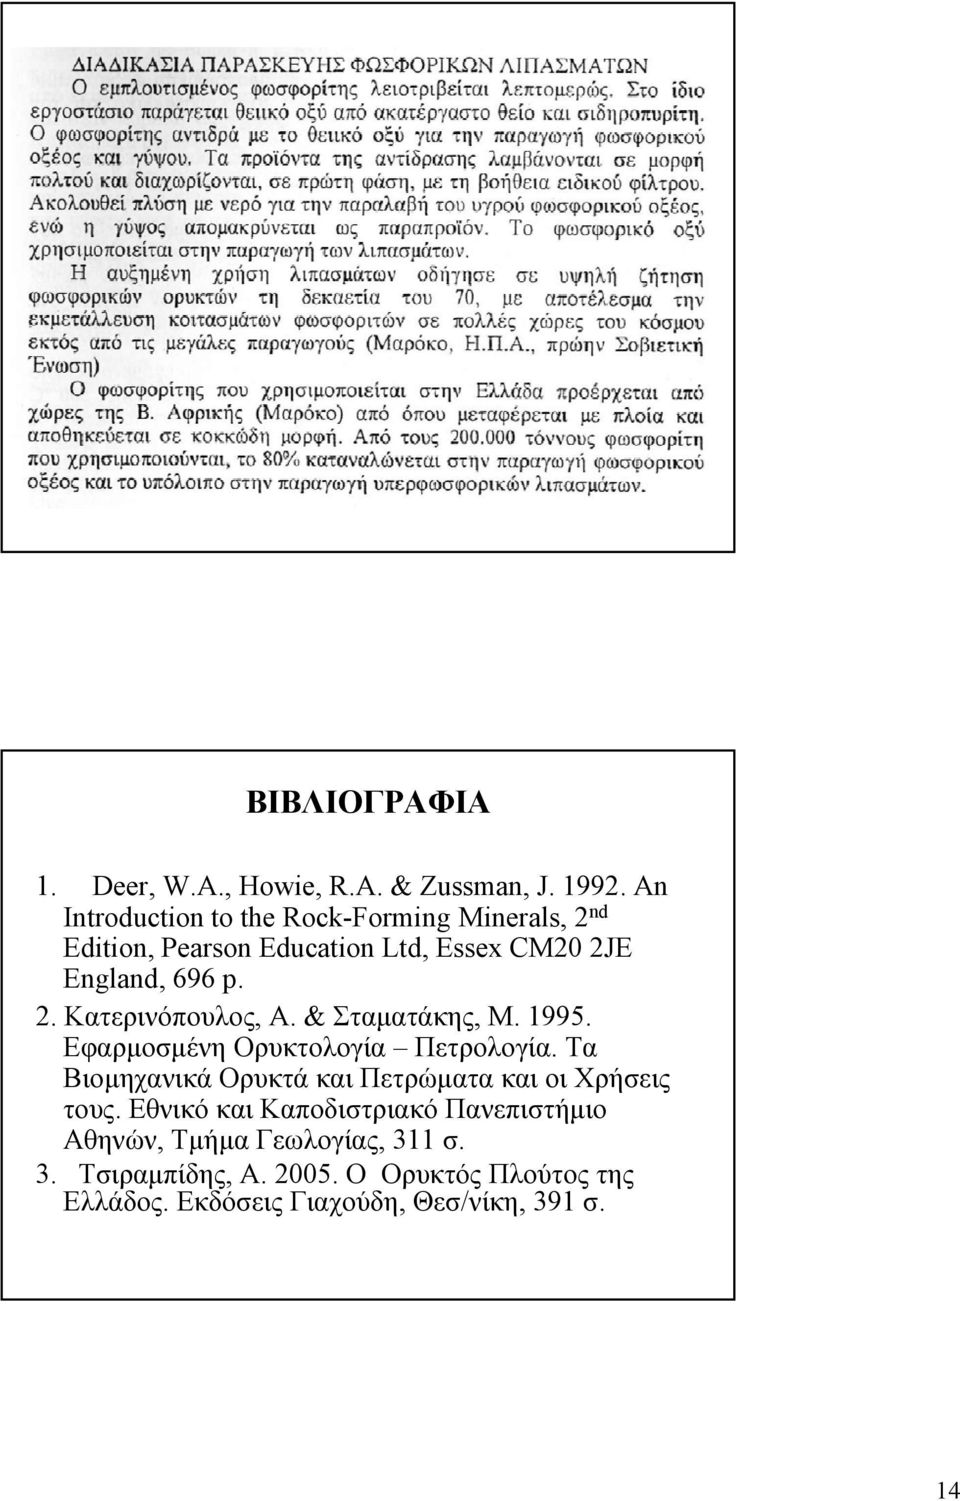 & Σταματάκης, Μ. 1995. Εφαρμοσμένη Ορυκτολογία Πετρολογία. Τα Βιομηχανικά Ορυκτά και Πετρώματα και οι Χρήσεις τους.